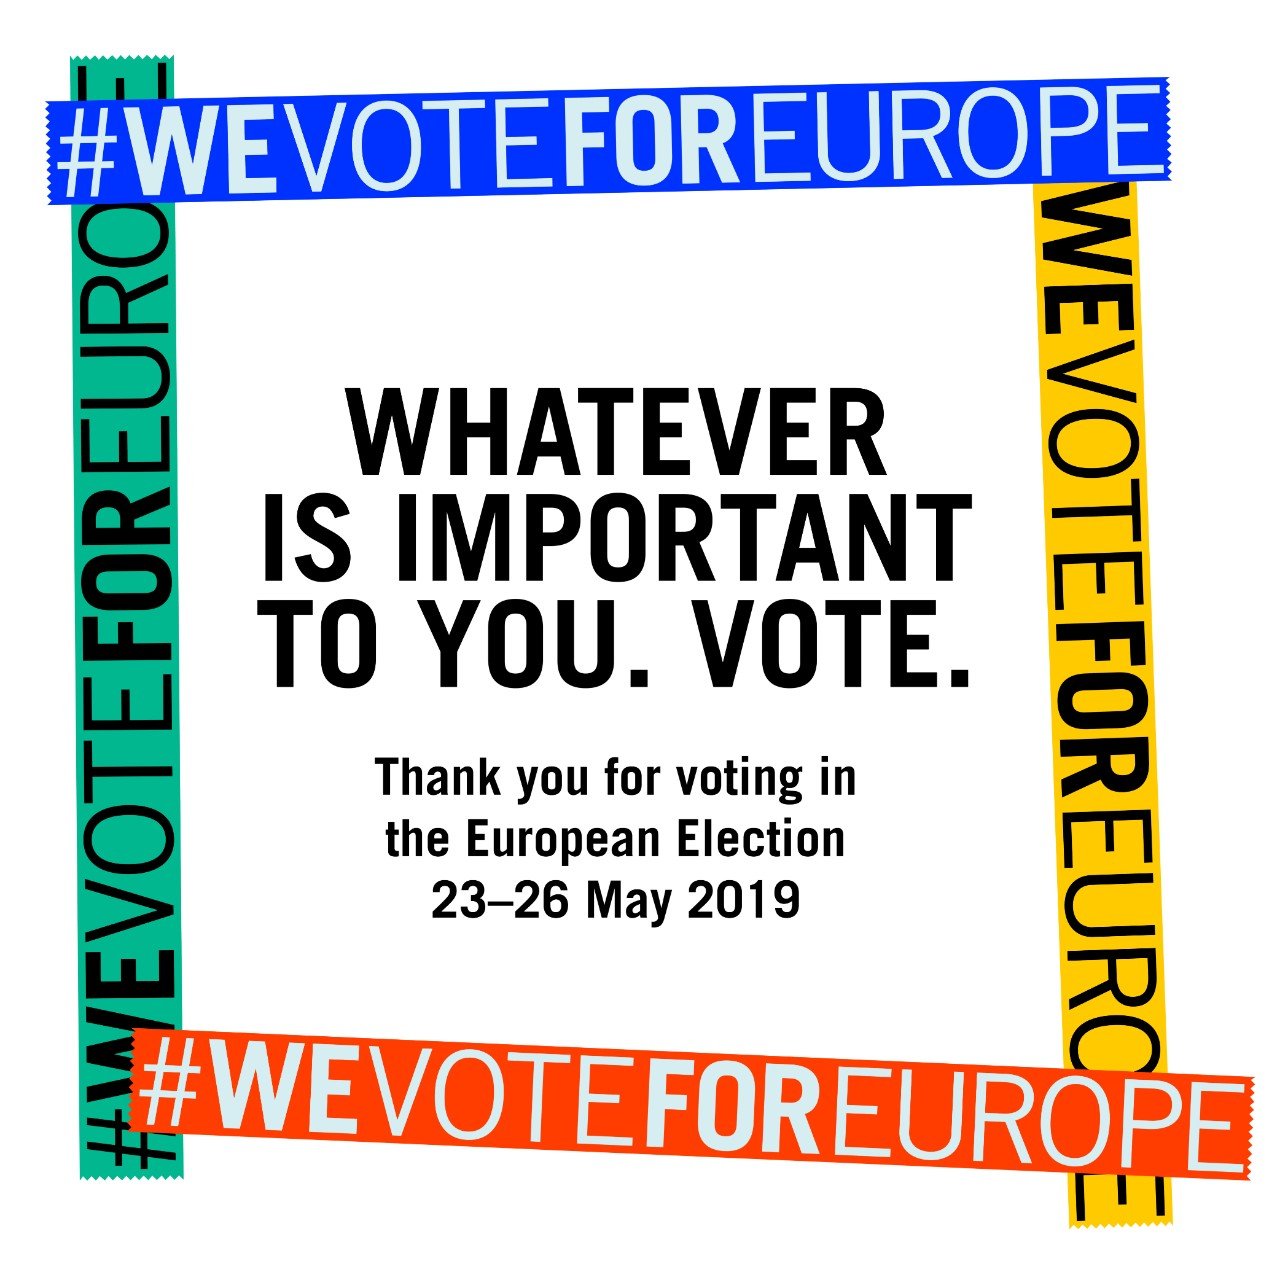 Fête de la Musique joins 75 festivals for We Vote For Europe